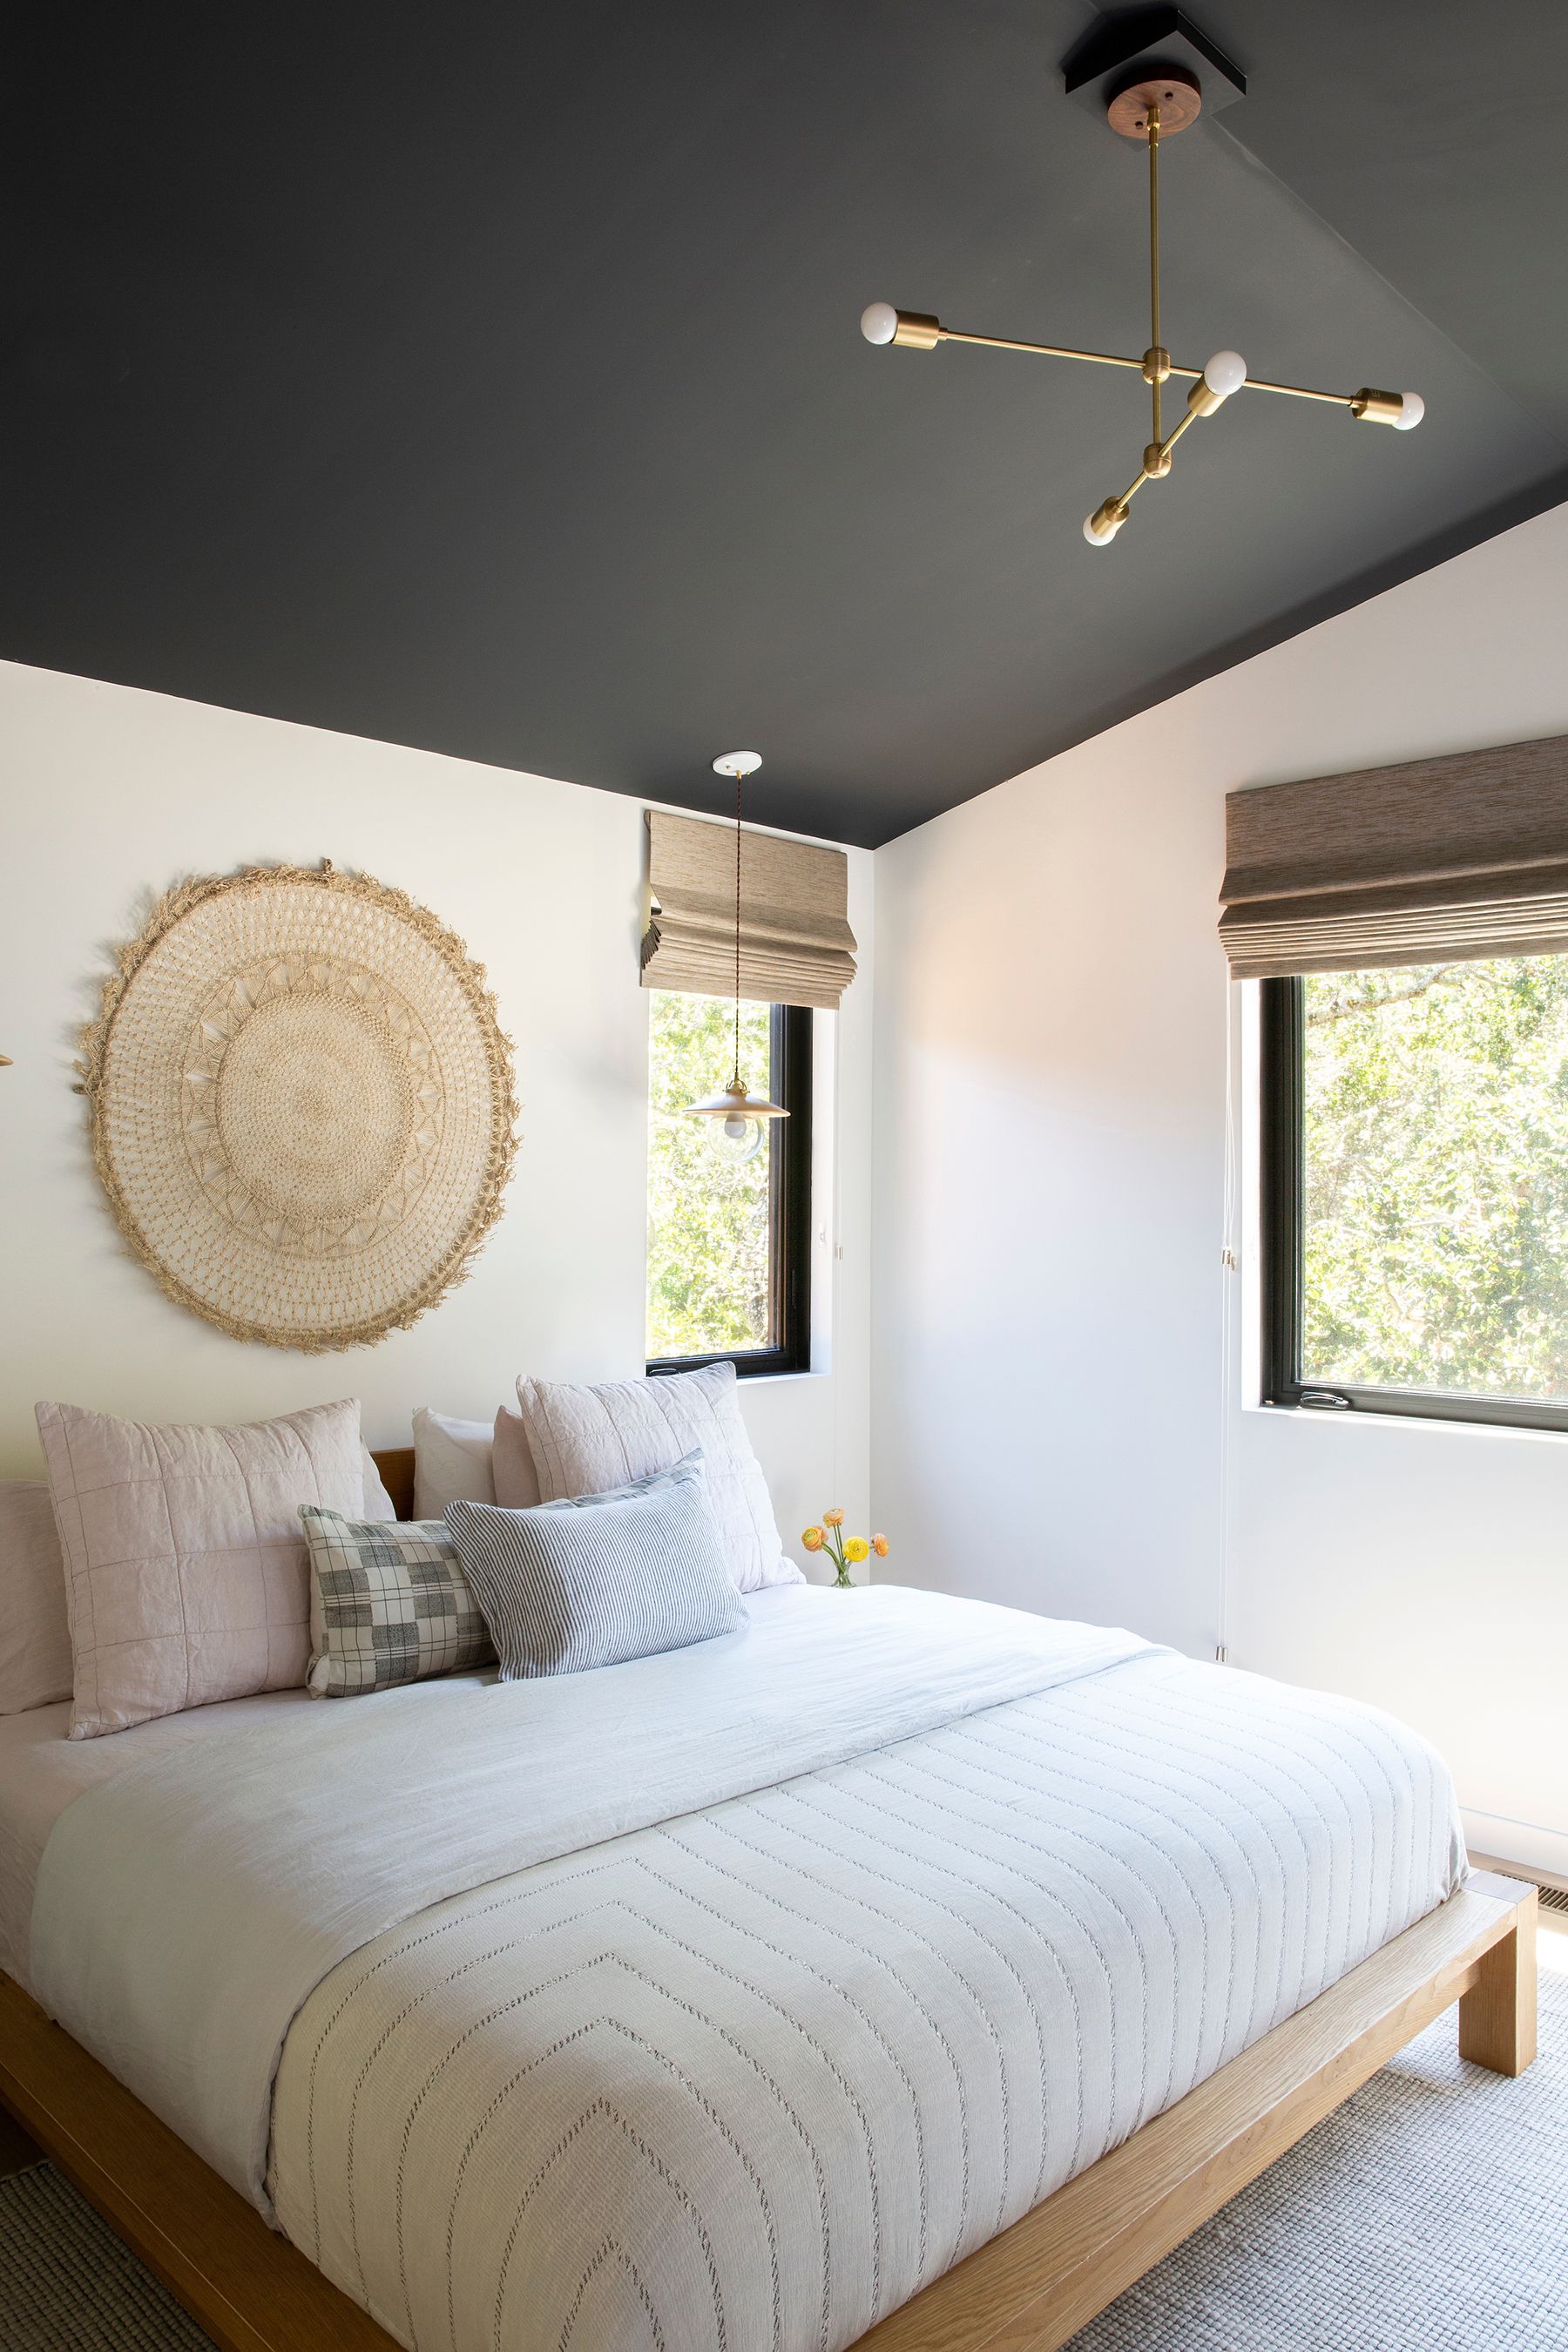 Bedrooms With Low Platform Beds, Platform Bed Frame Ideas